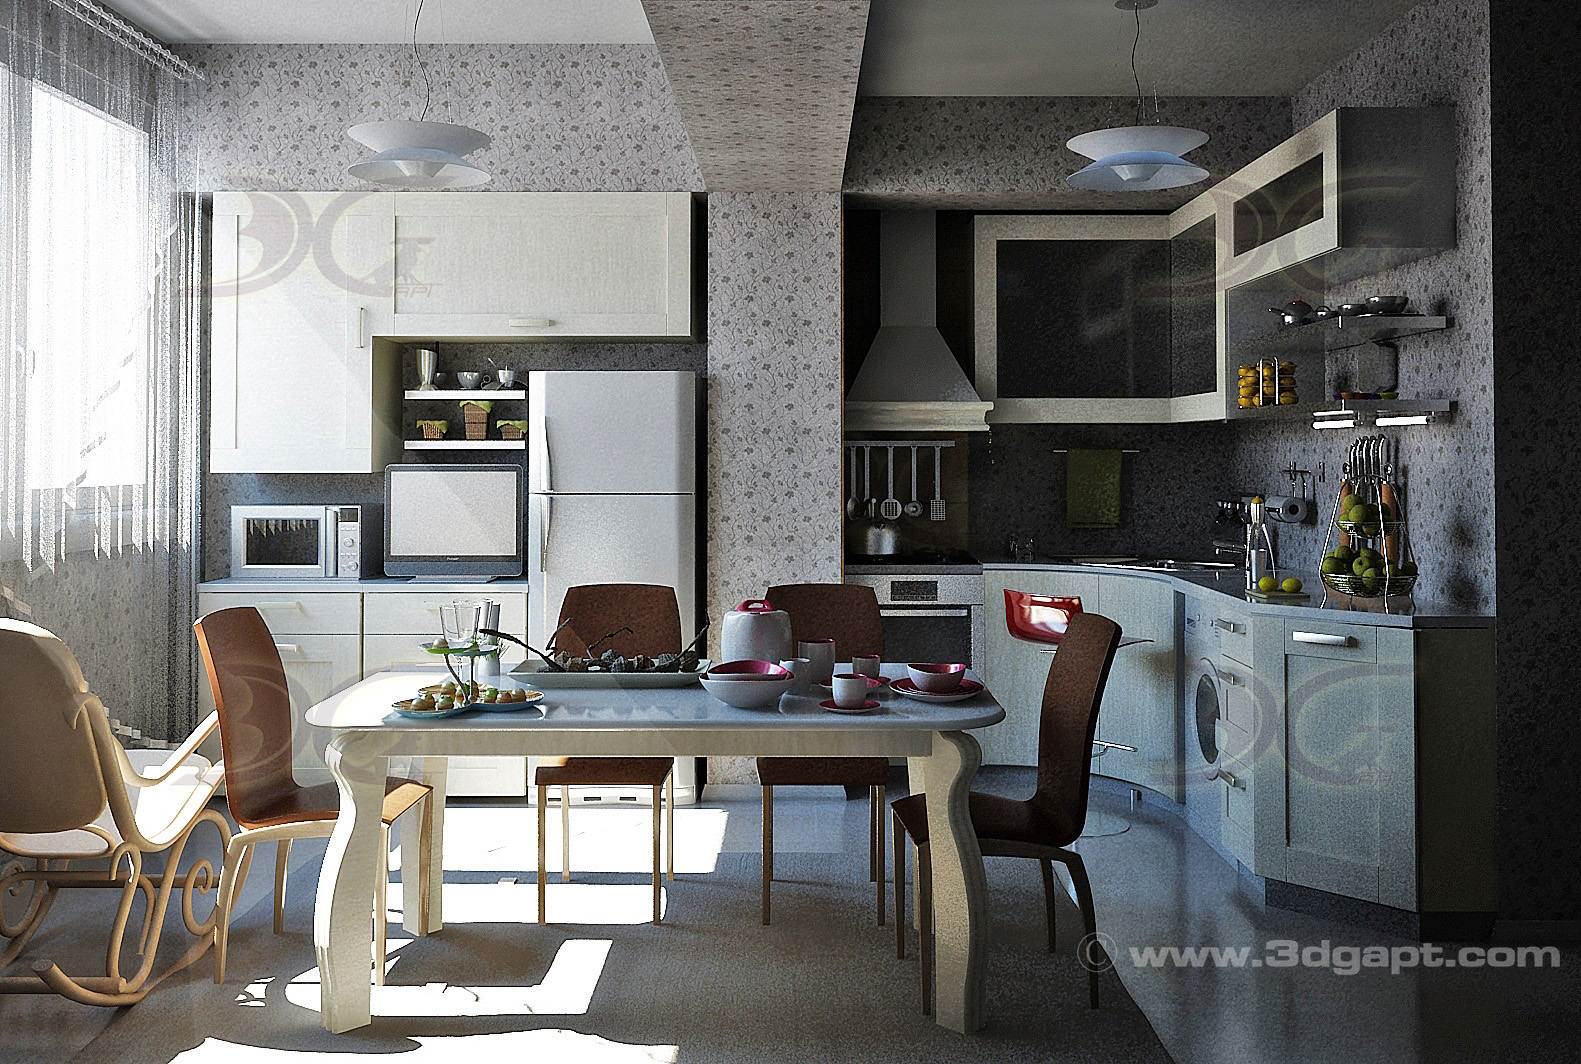 architecture interior kitchen-3versions 36